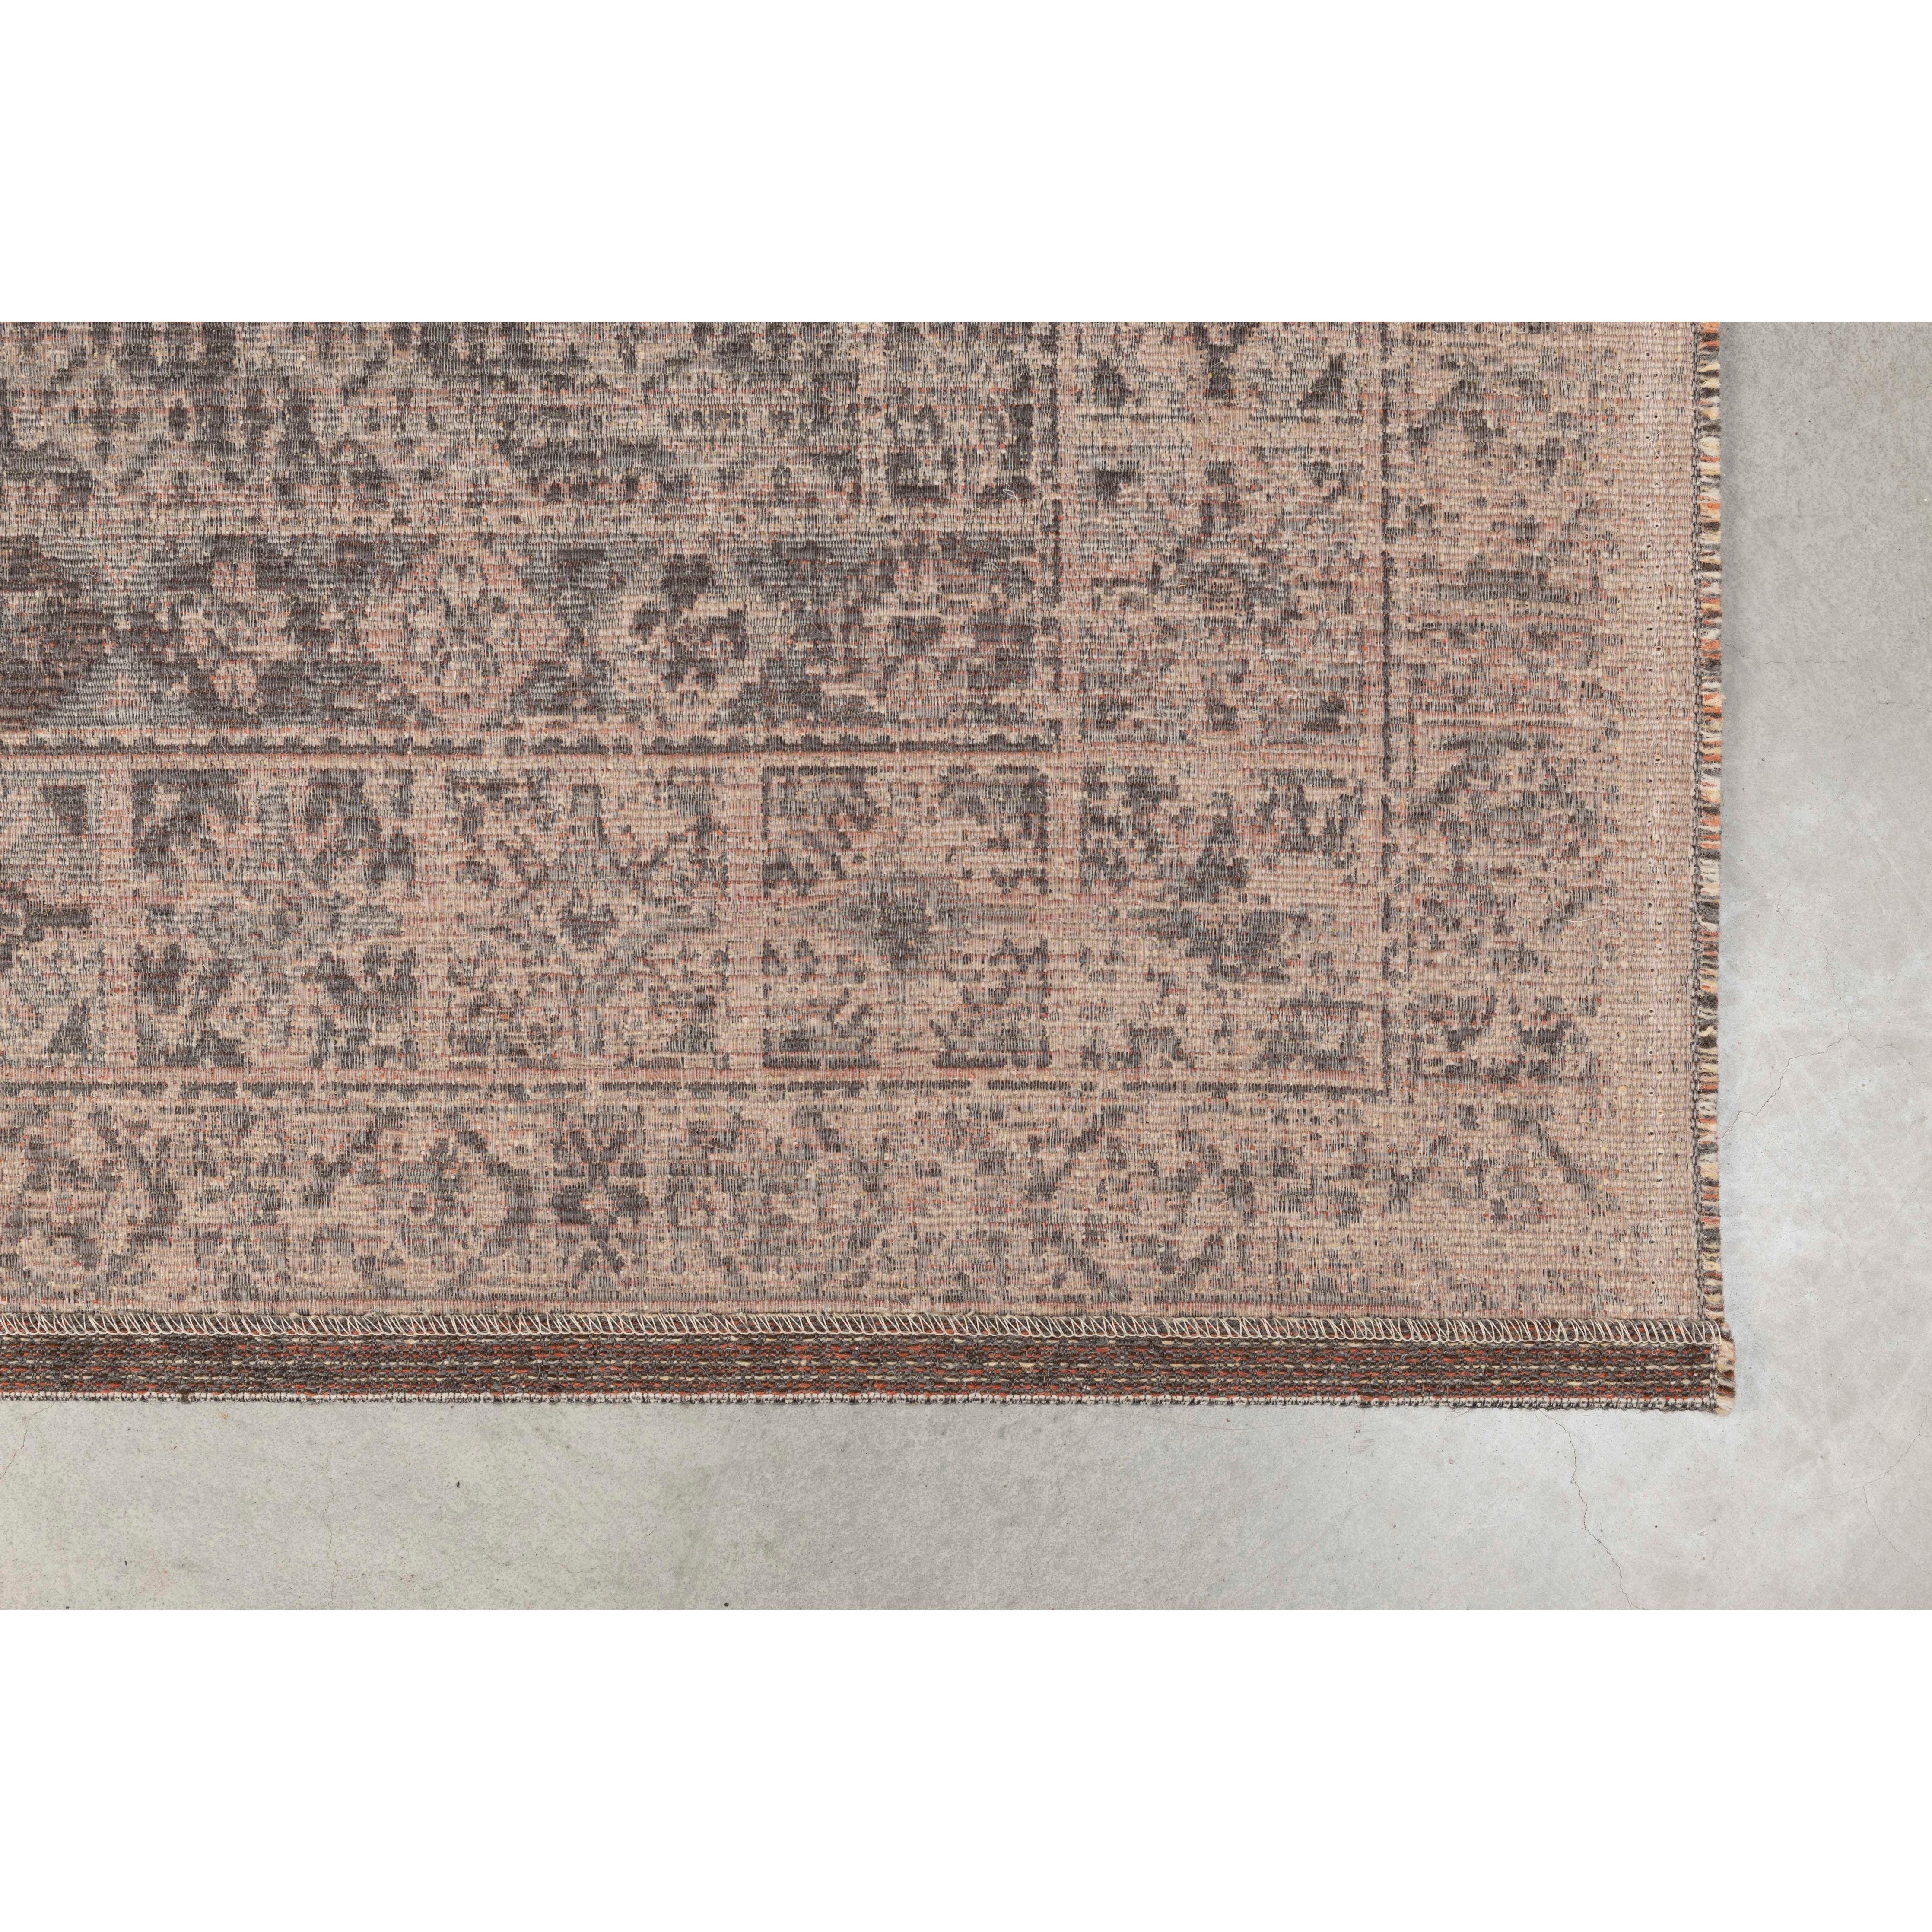 Carpet devon earthy brown 170 x 240